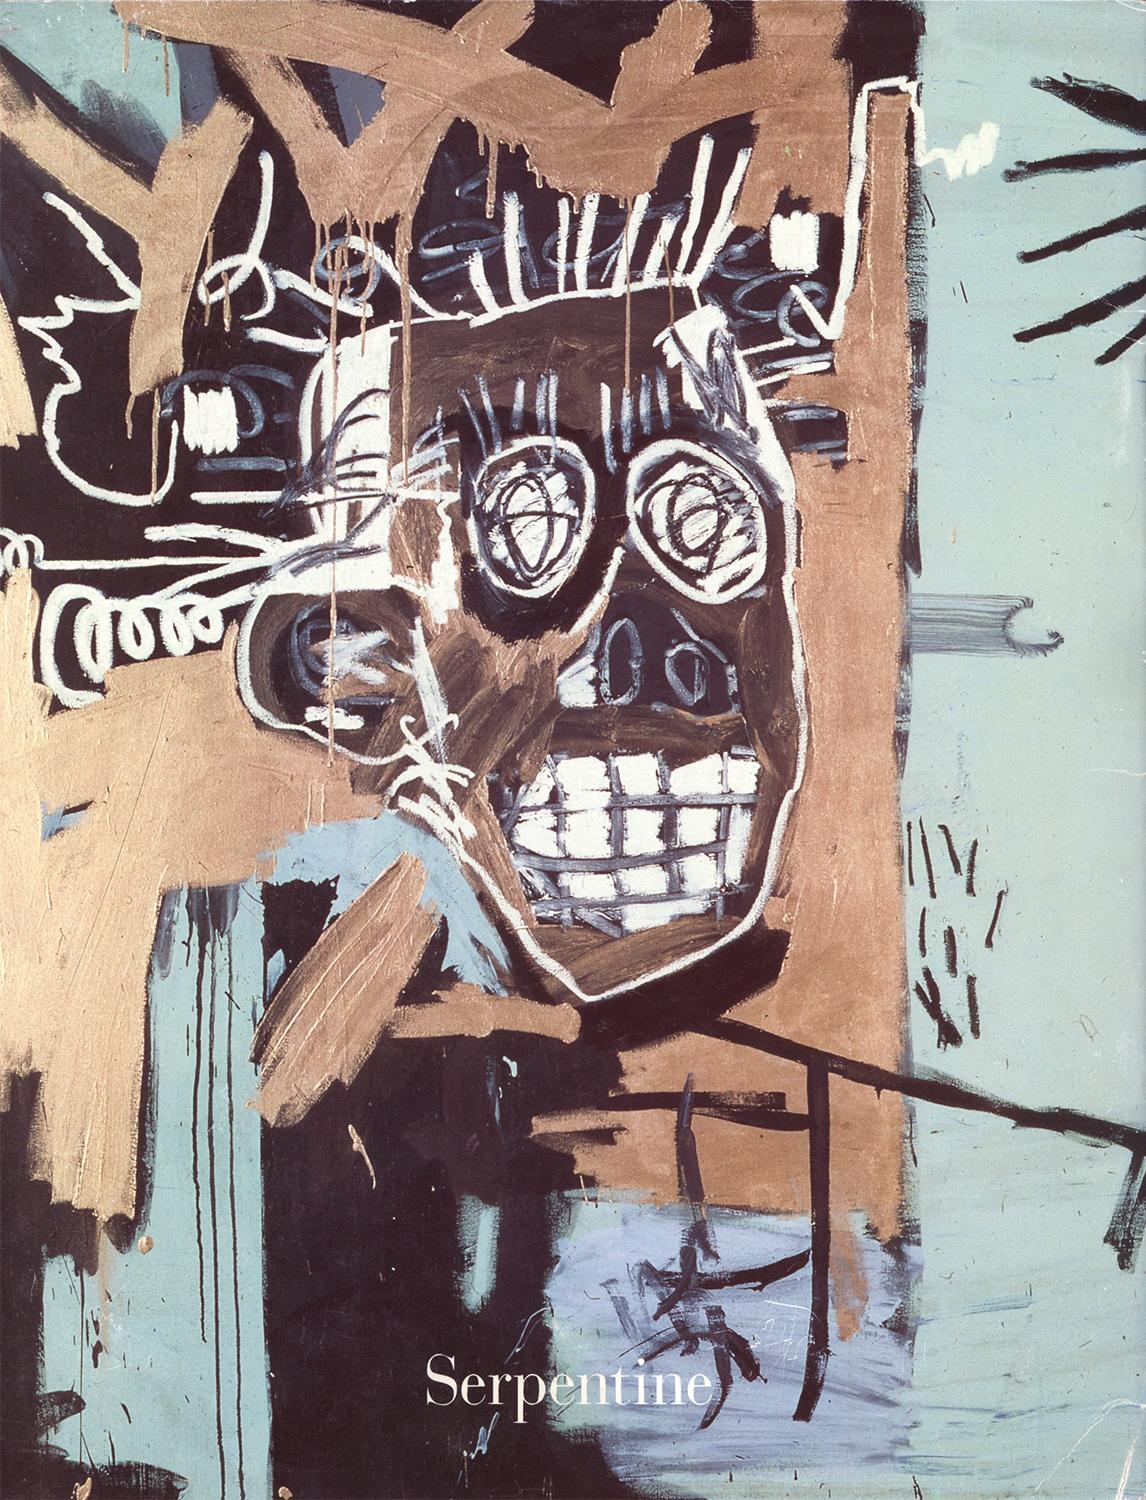 Galerie Basquiat Serpentine, Londres, 1996 (catalogue d'exposition) - Print de after Jean-Michel Basquiat